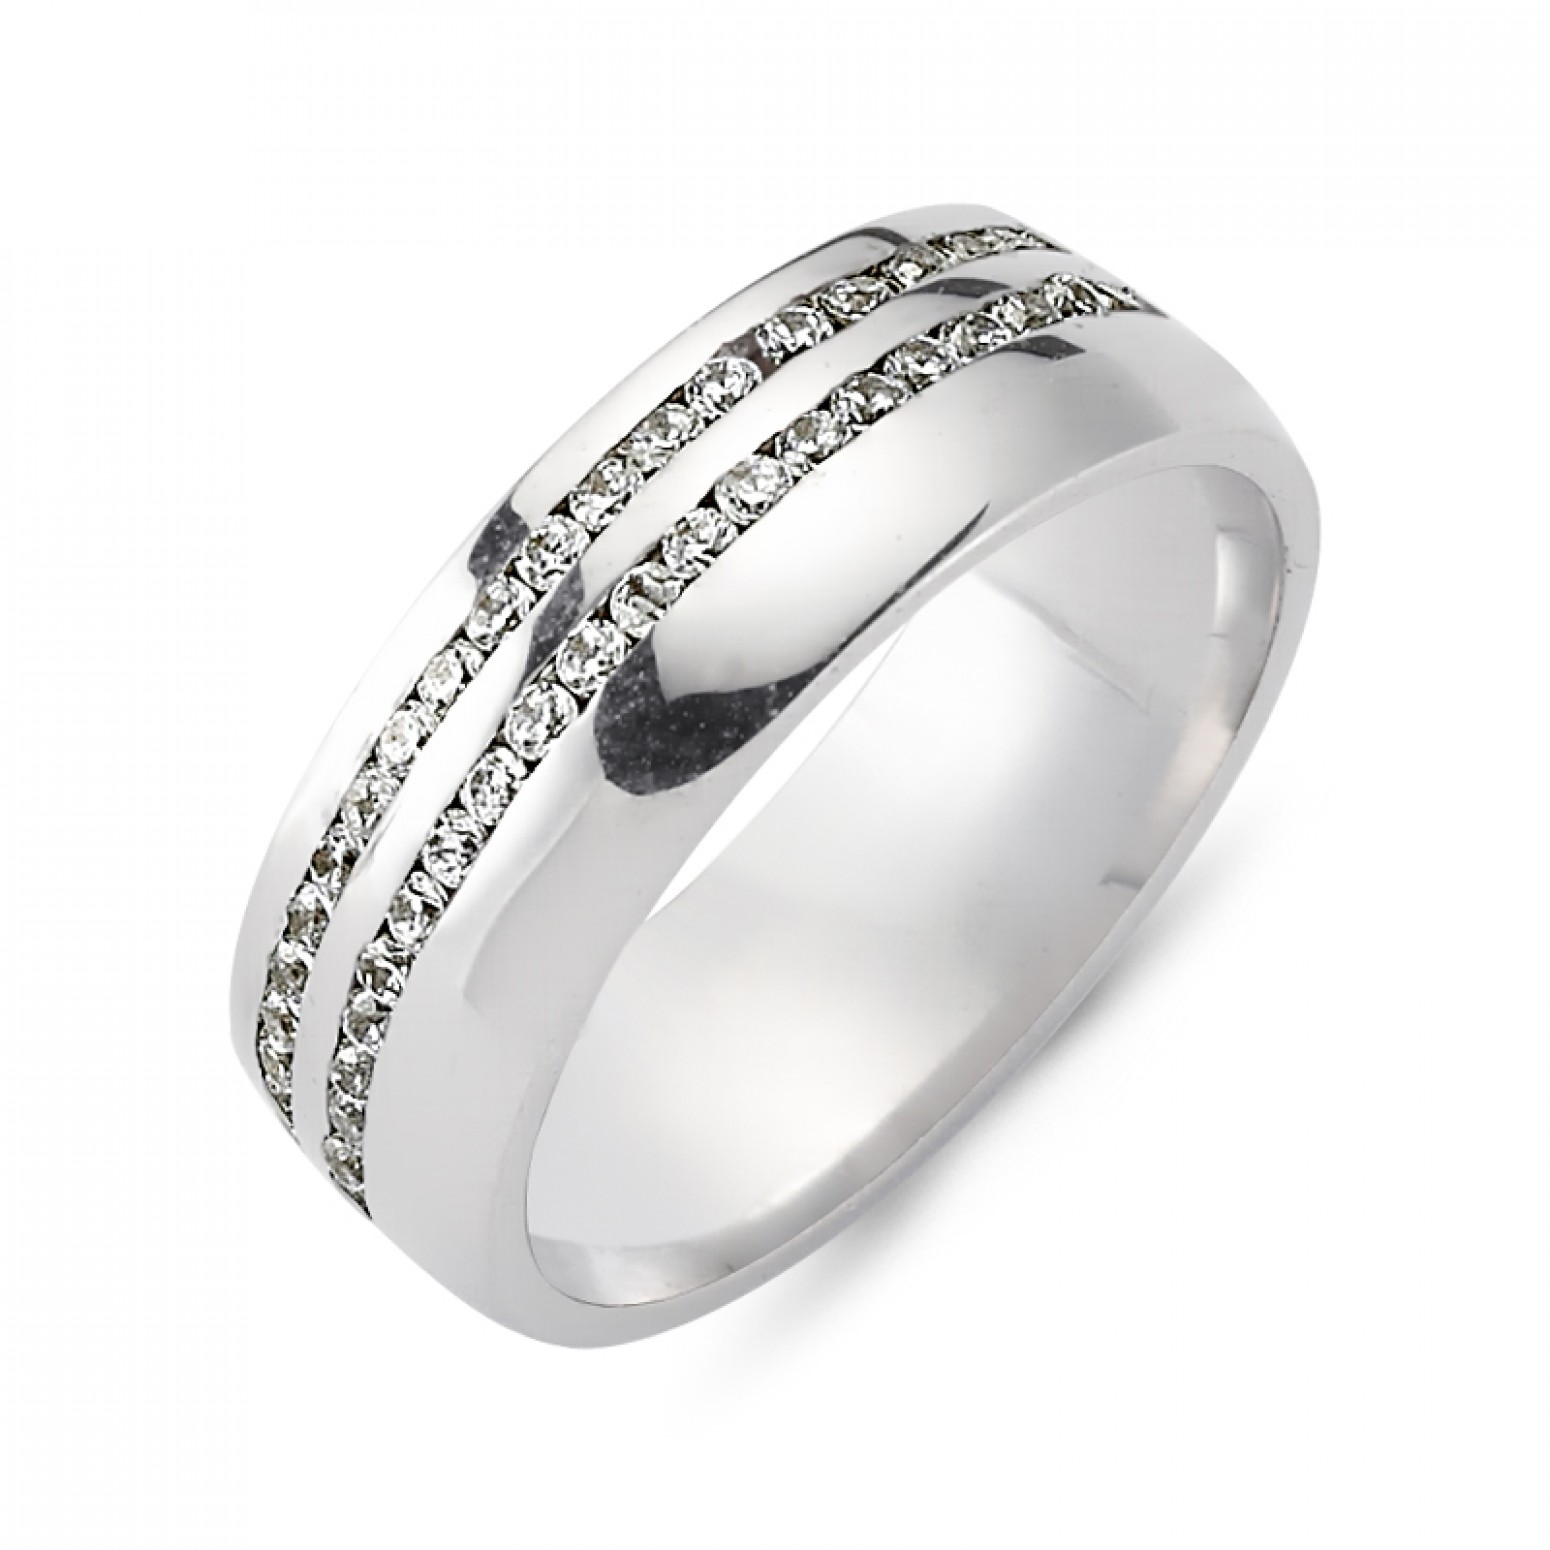 Chrilia wedding rings in white gold, K14, pair da2805 WEDDING RINGS Κοσμηματα - chrilia.gr